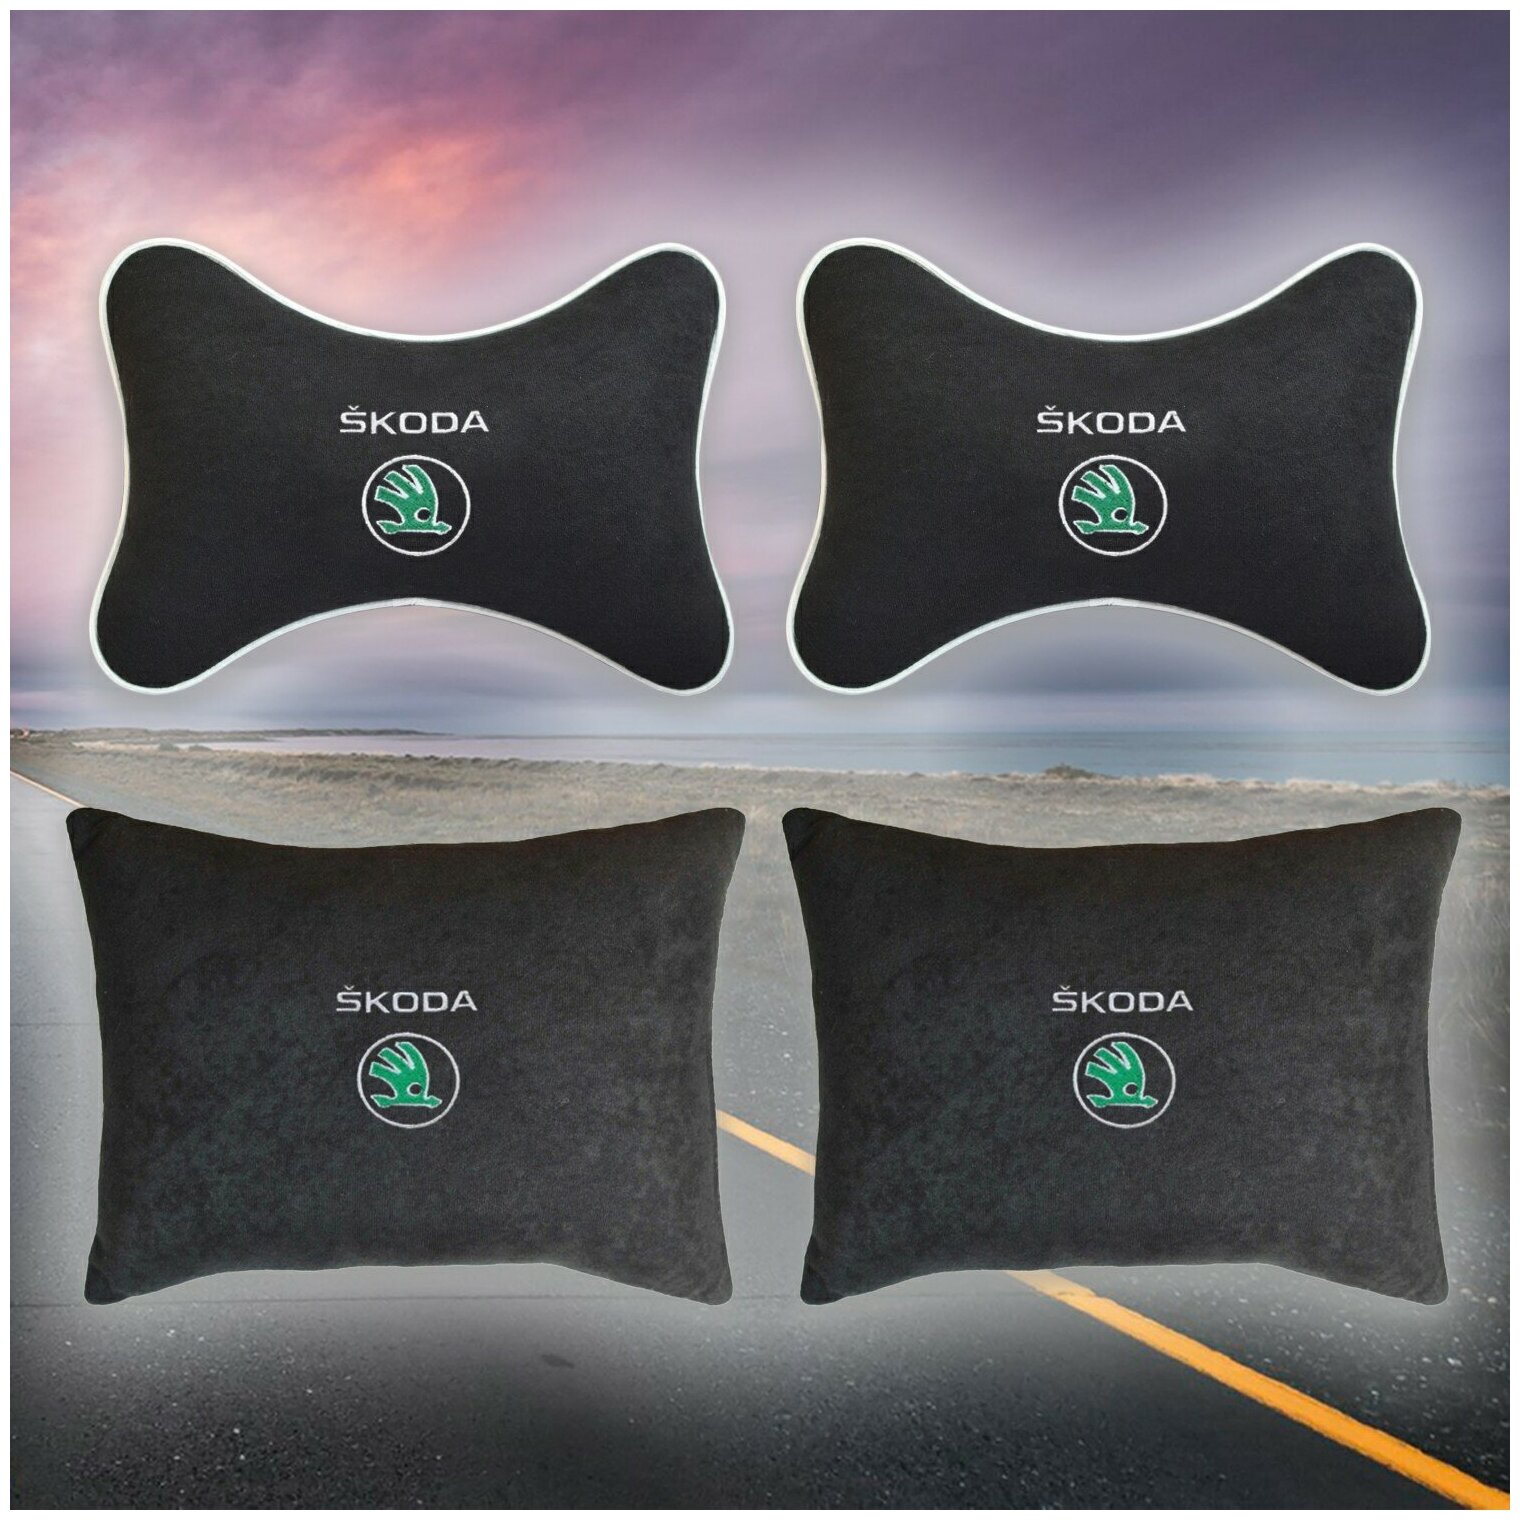 Комплект автомобильных подушек из черного велюра и вышивкой для Skoda (шкода) (2 подушки на подголовник и 2 автомобильные подушки)